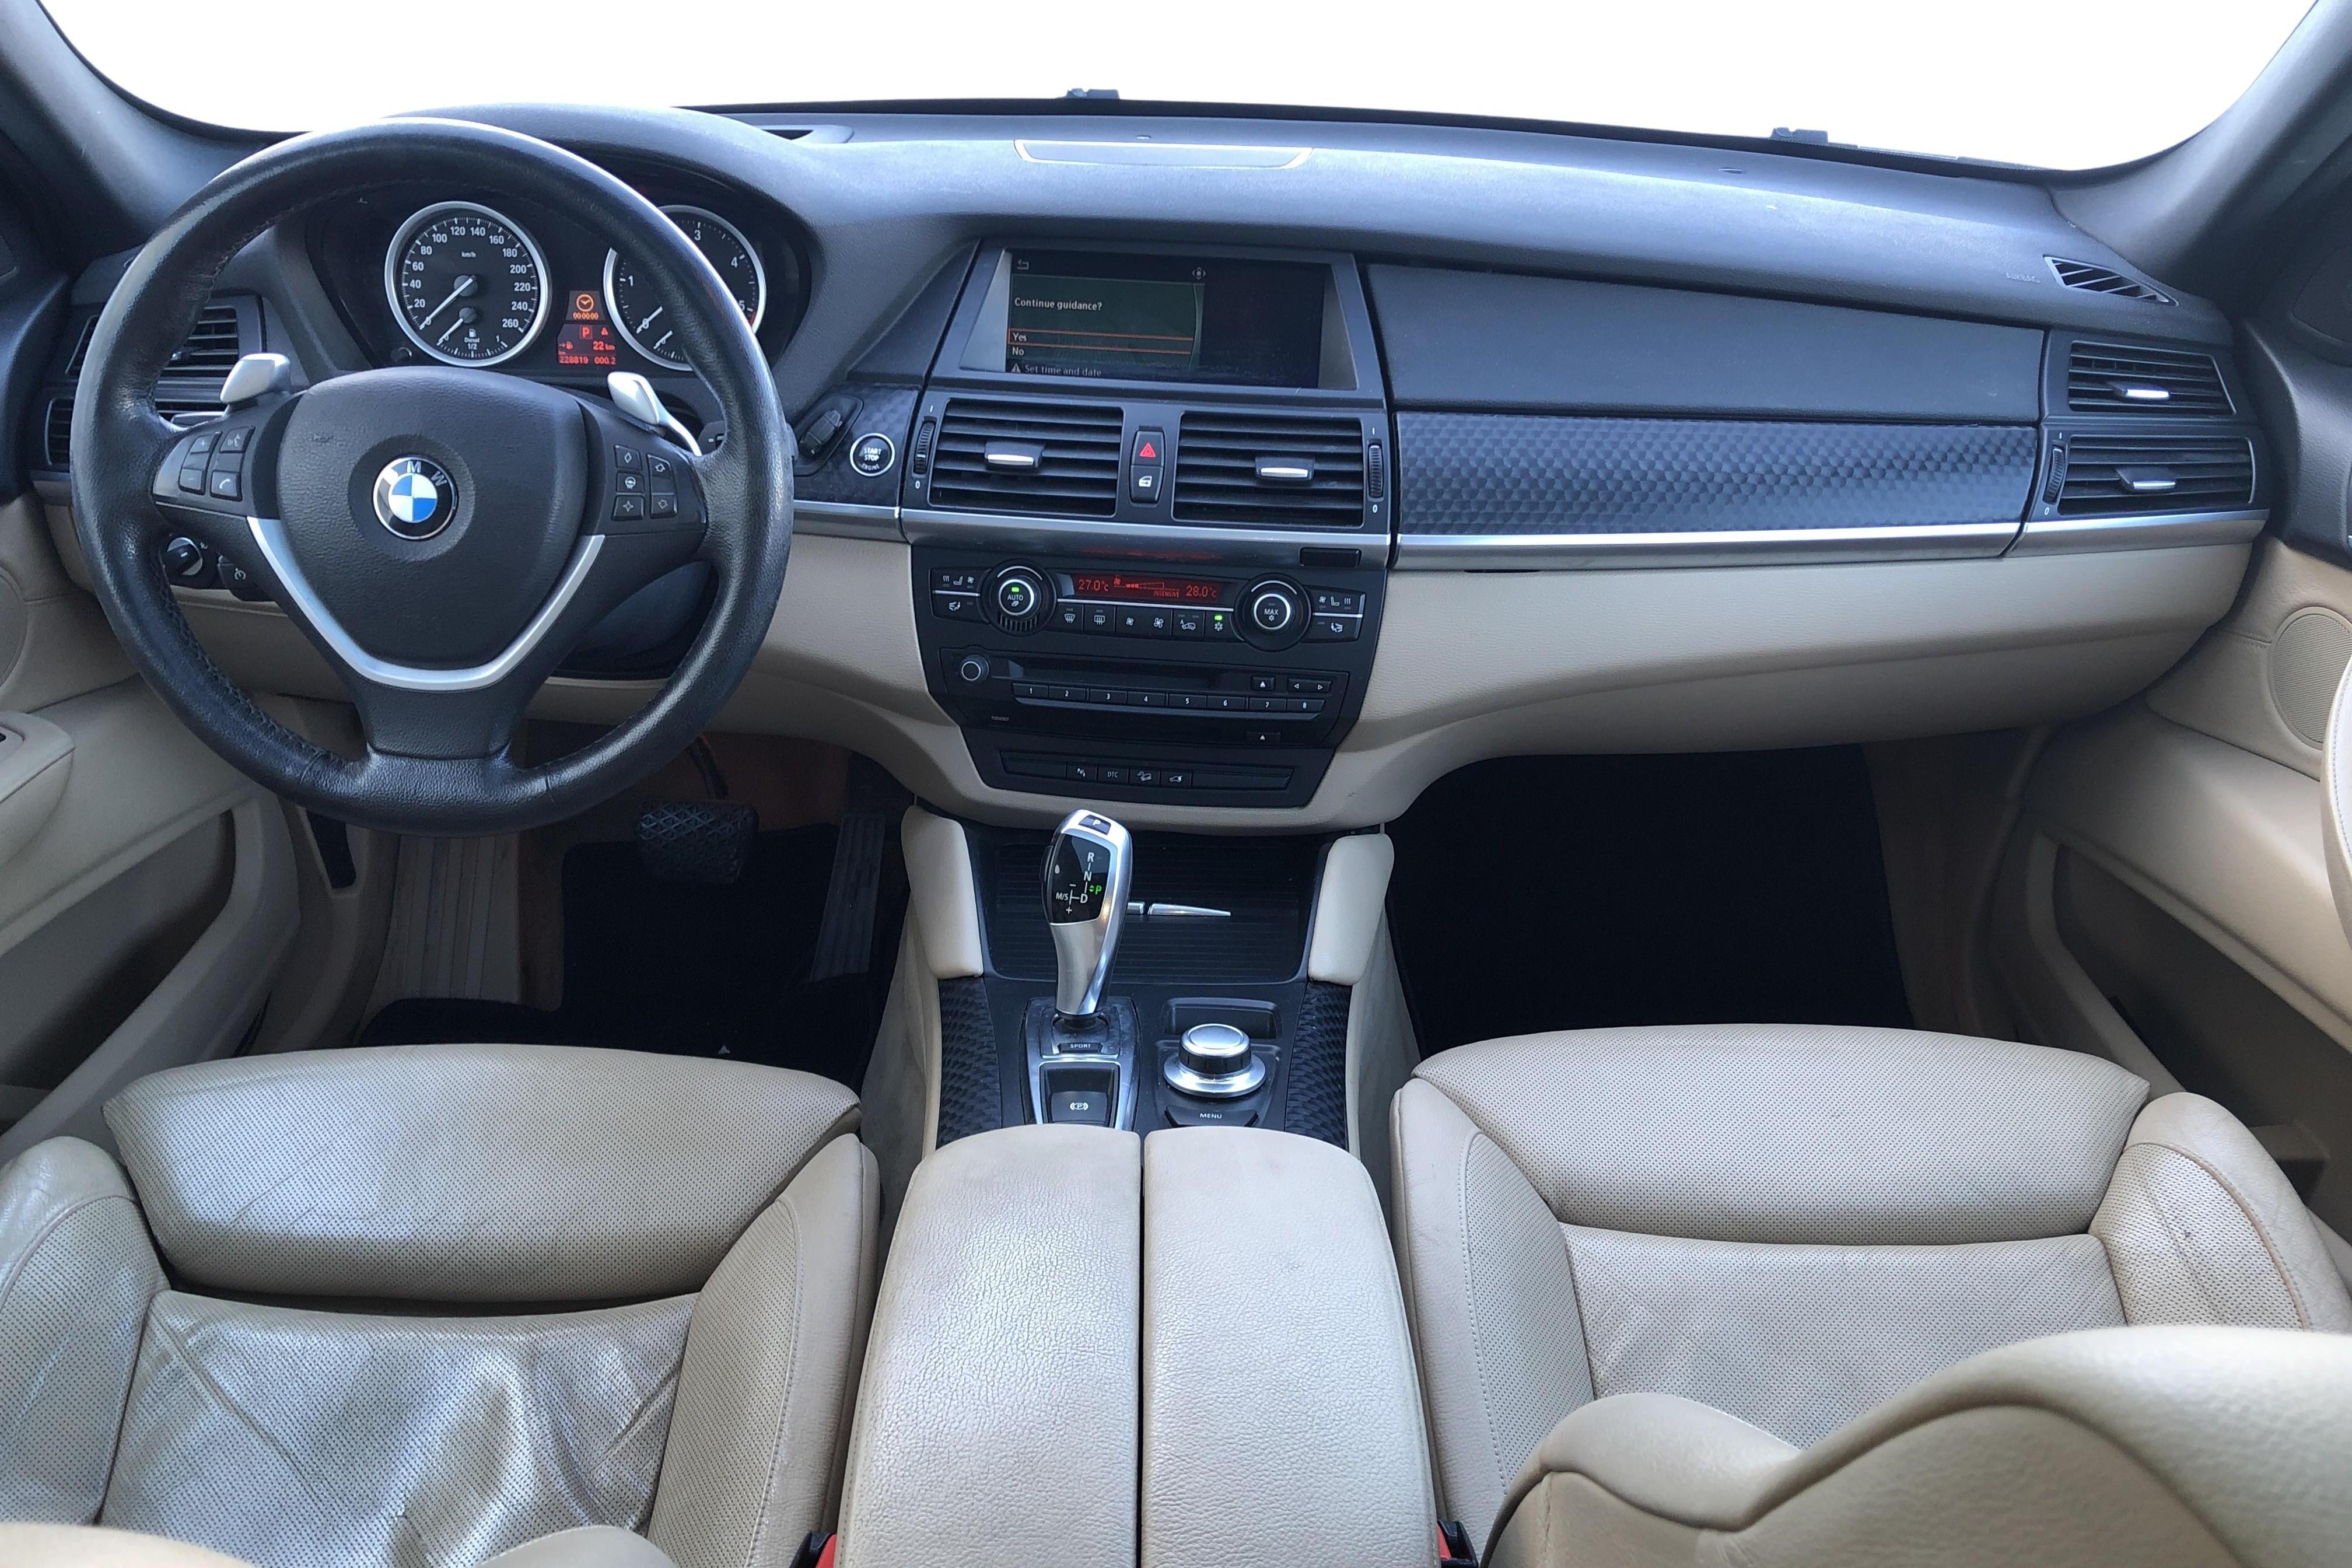 BMW X6 35d, E71 (286hk) - 228 820 km - Automatic - black - 2008